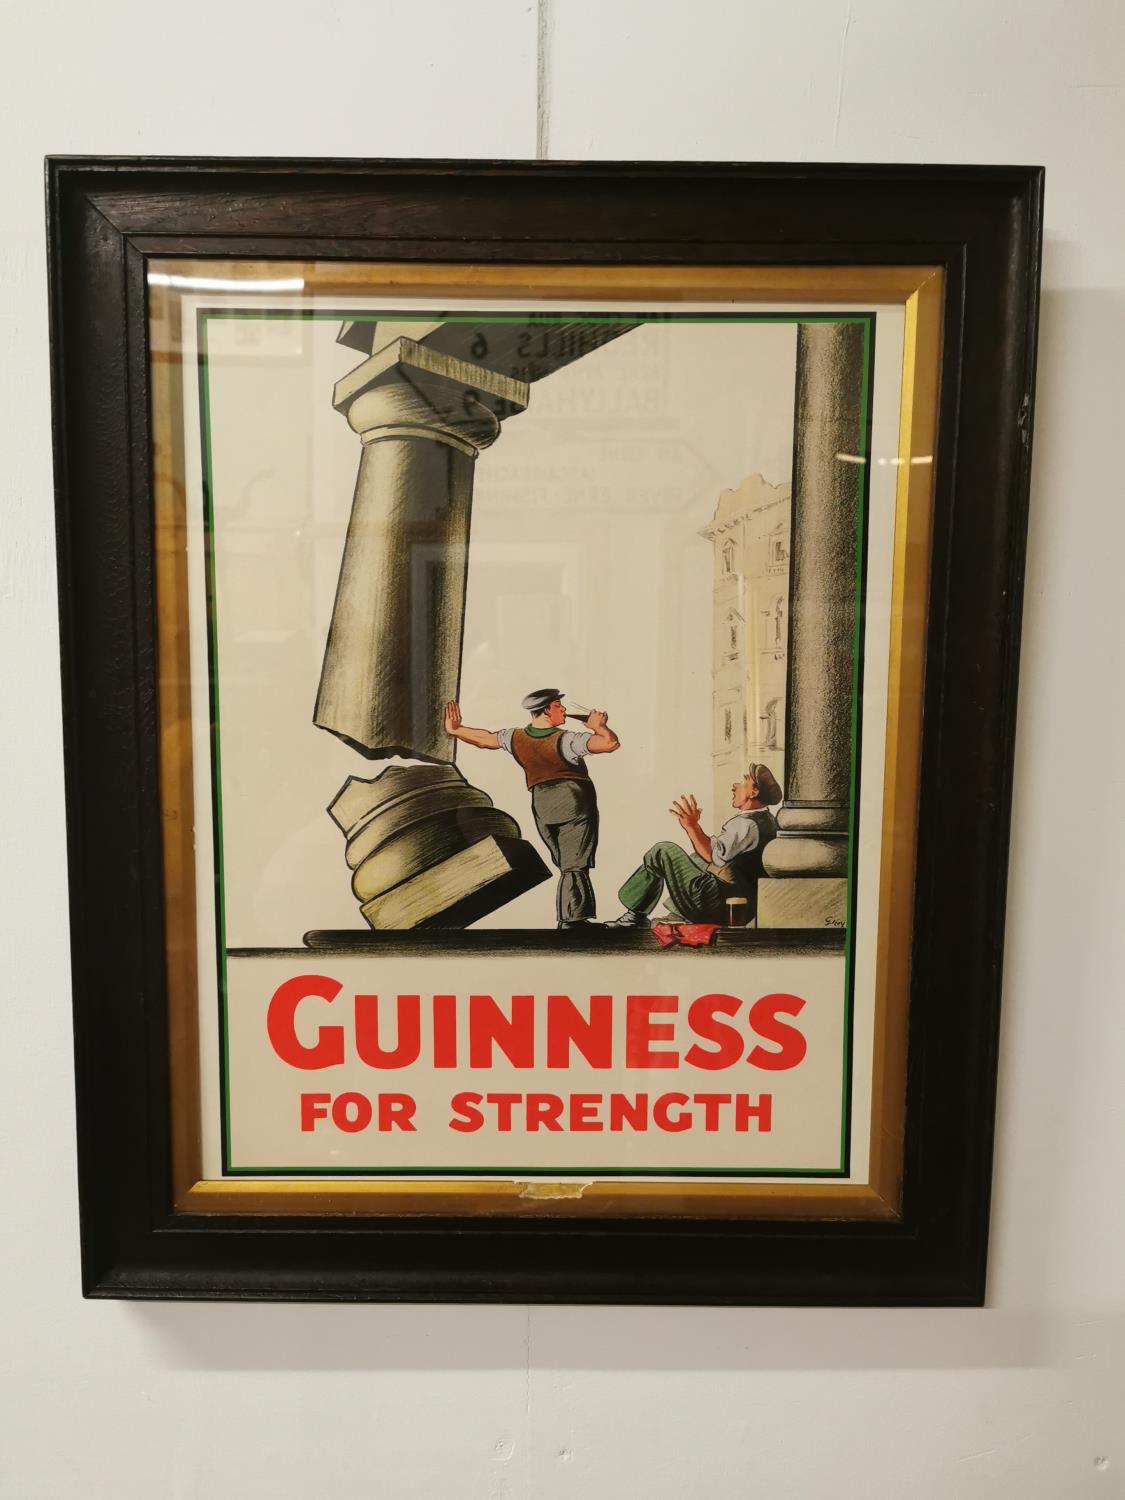 Guinness For Strength framed advertising print.